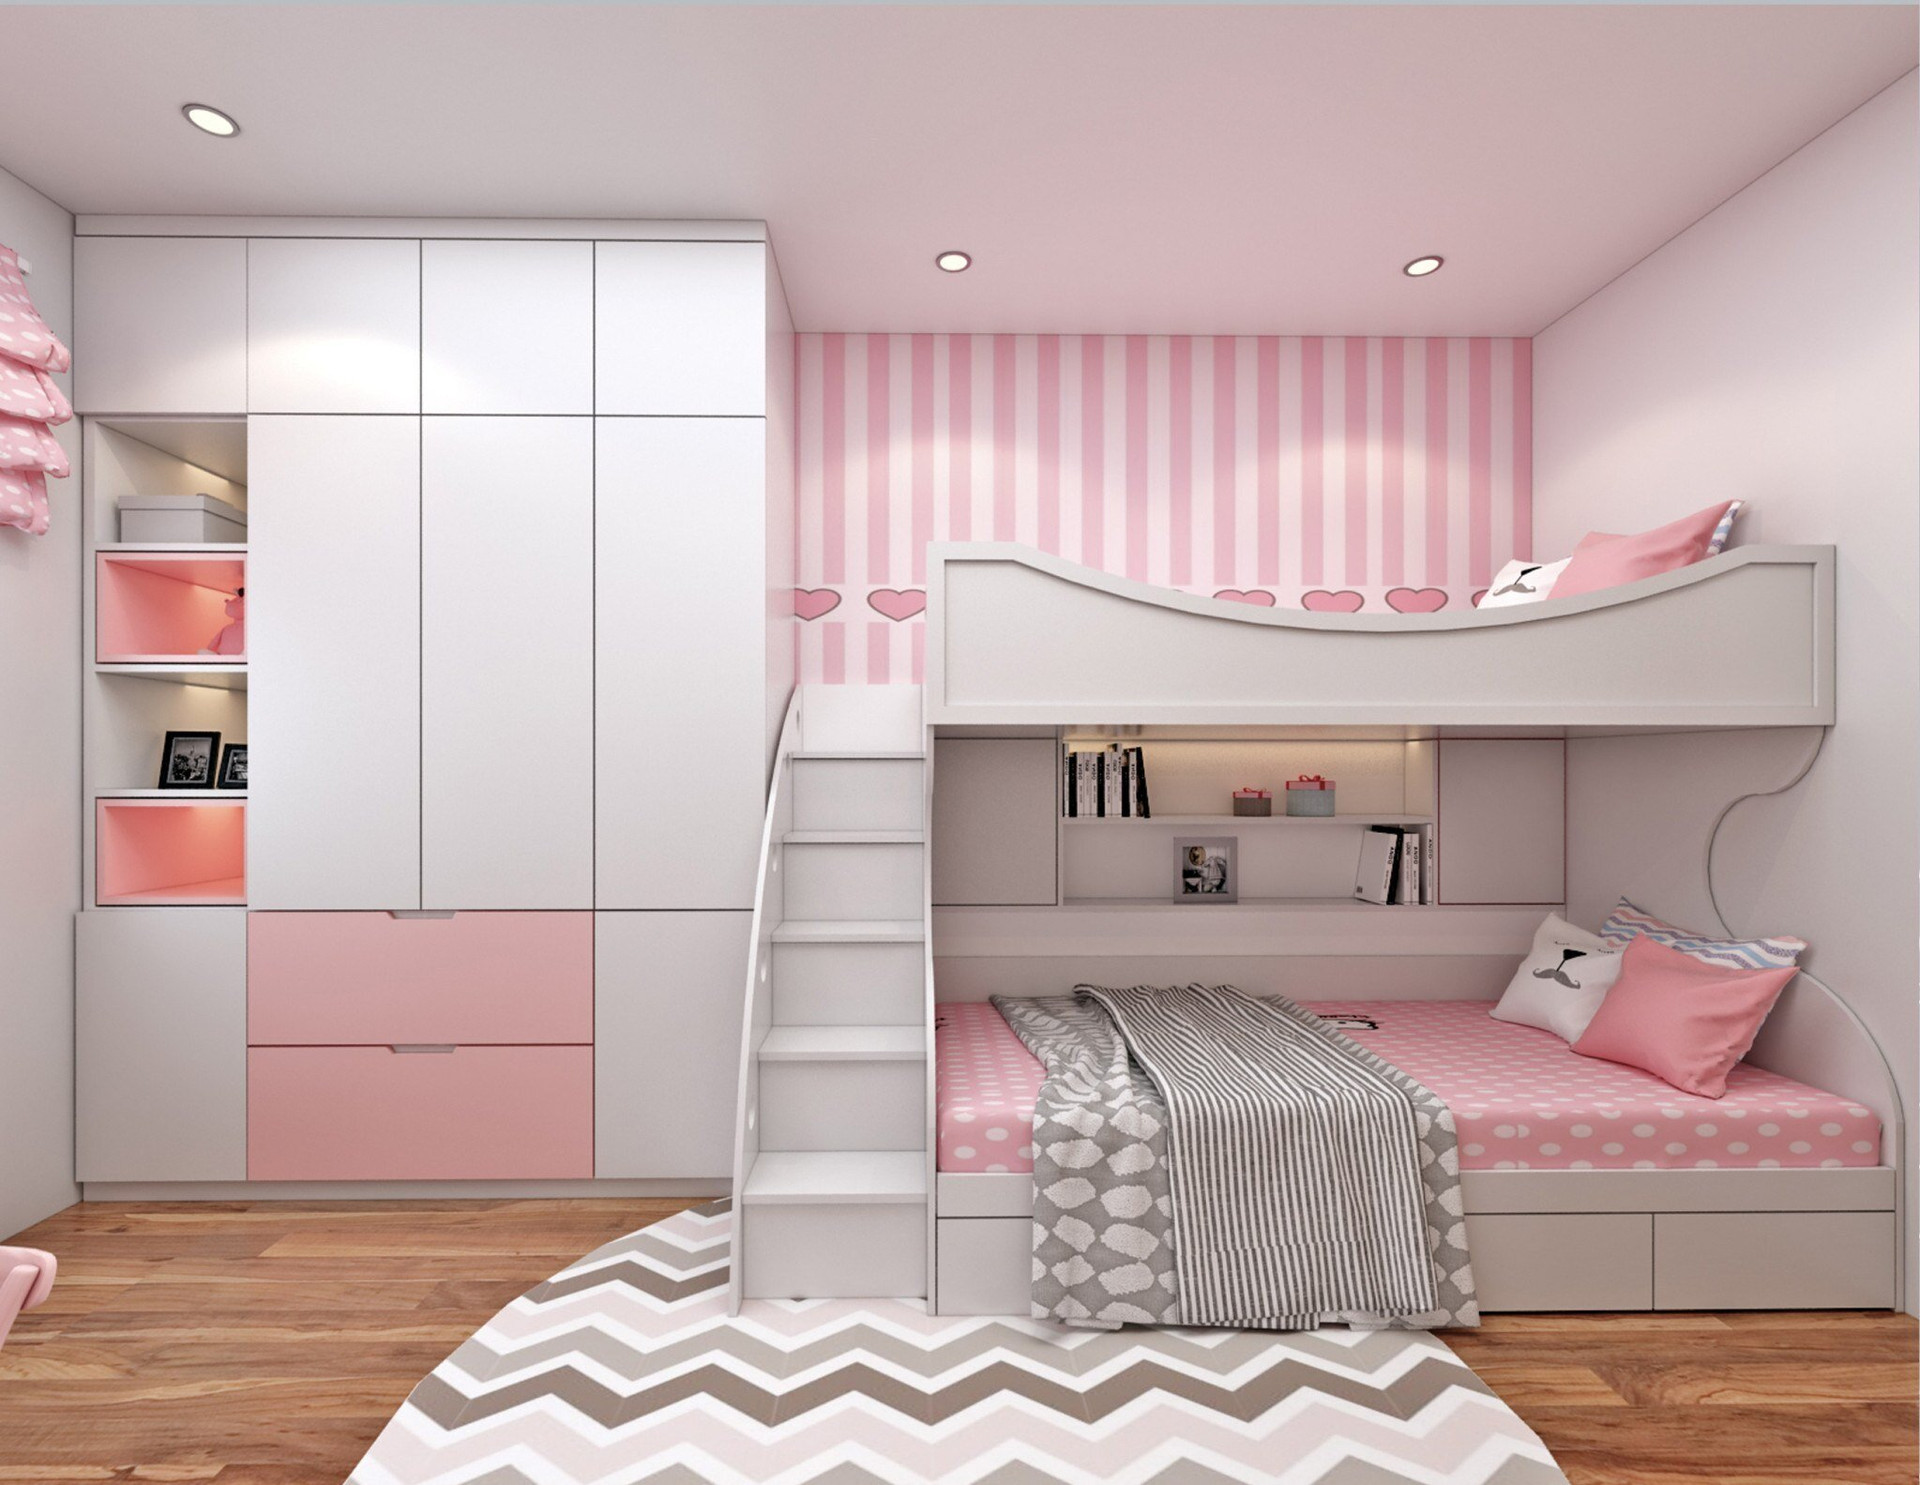 Đối với những gia đình có diện tích hạn hẹp nhưng có hai cô công chúa nhỏ, thì việc sử dụng giường tầng là lựa chọn hợp lý. Căn phòng lấy màu hồng và trắng làm màu chủ đạo, kết hợp cùng màu nâu gỗ của sàn nhà tăng thêm sự nổi bật.